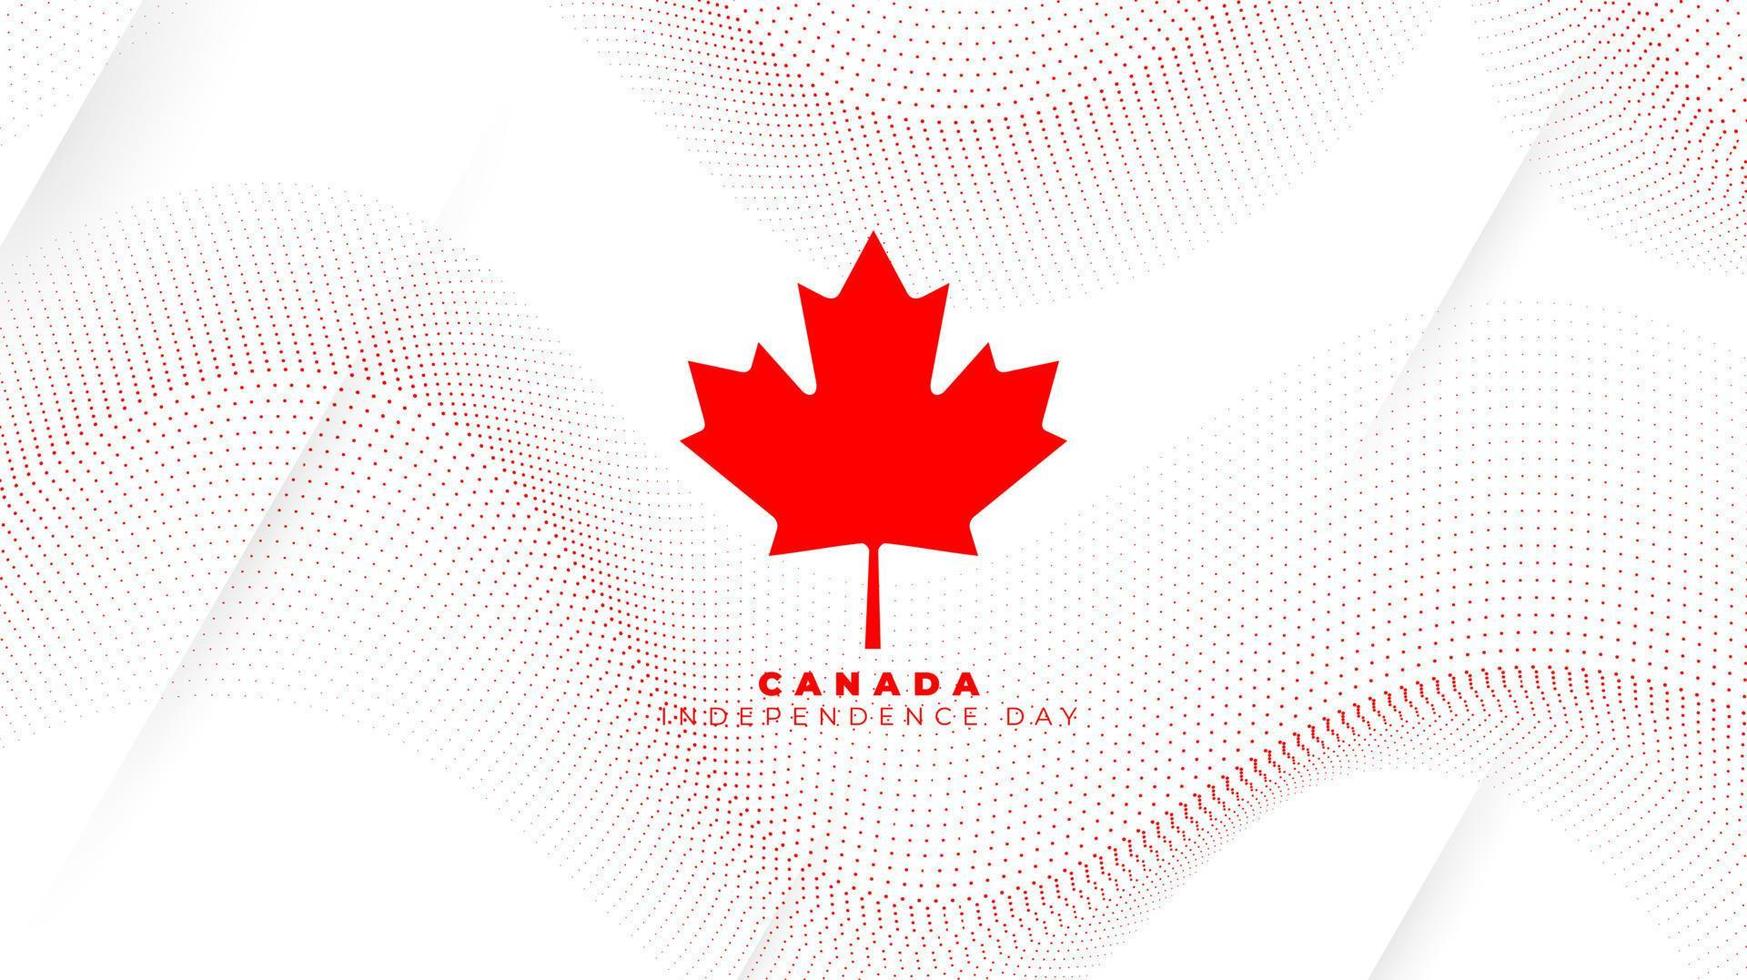 puntos ondeantes en fondo blanco con hoja de arce en la bandera de canadá para el diseño del día de la independencia de canadá vector